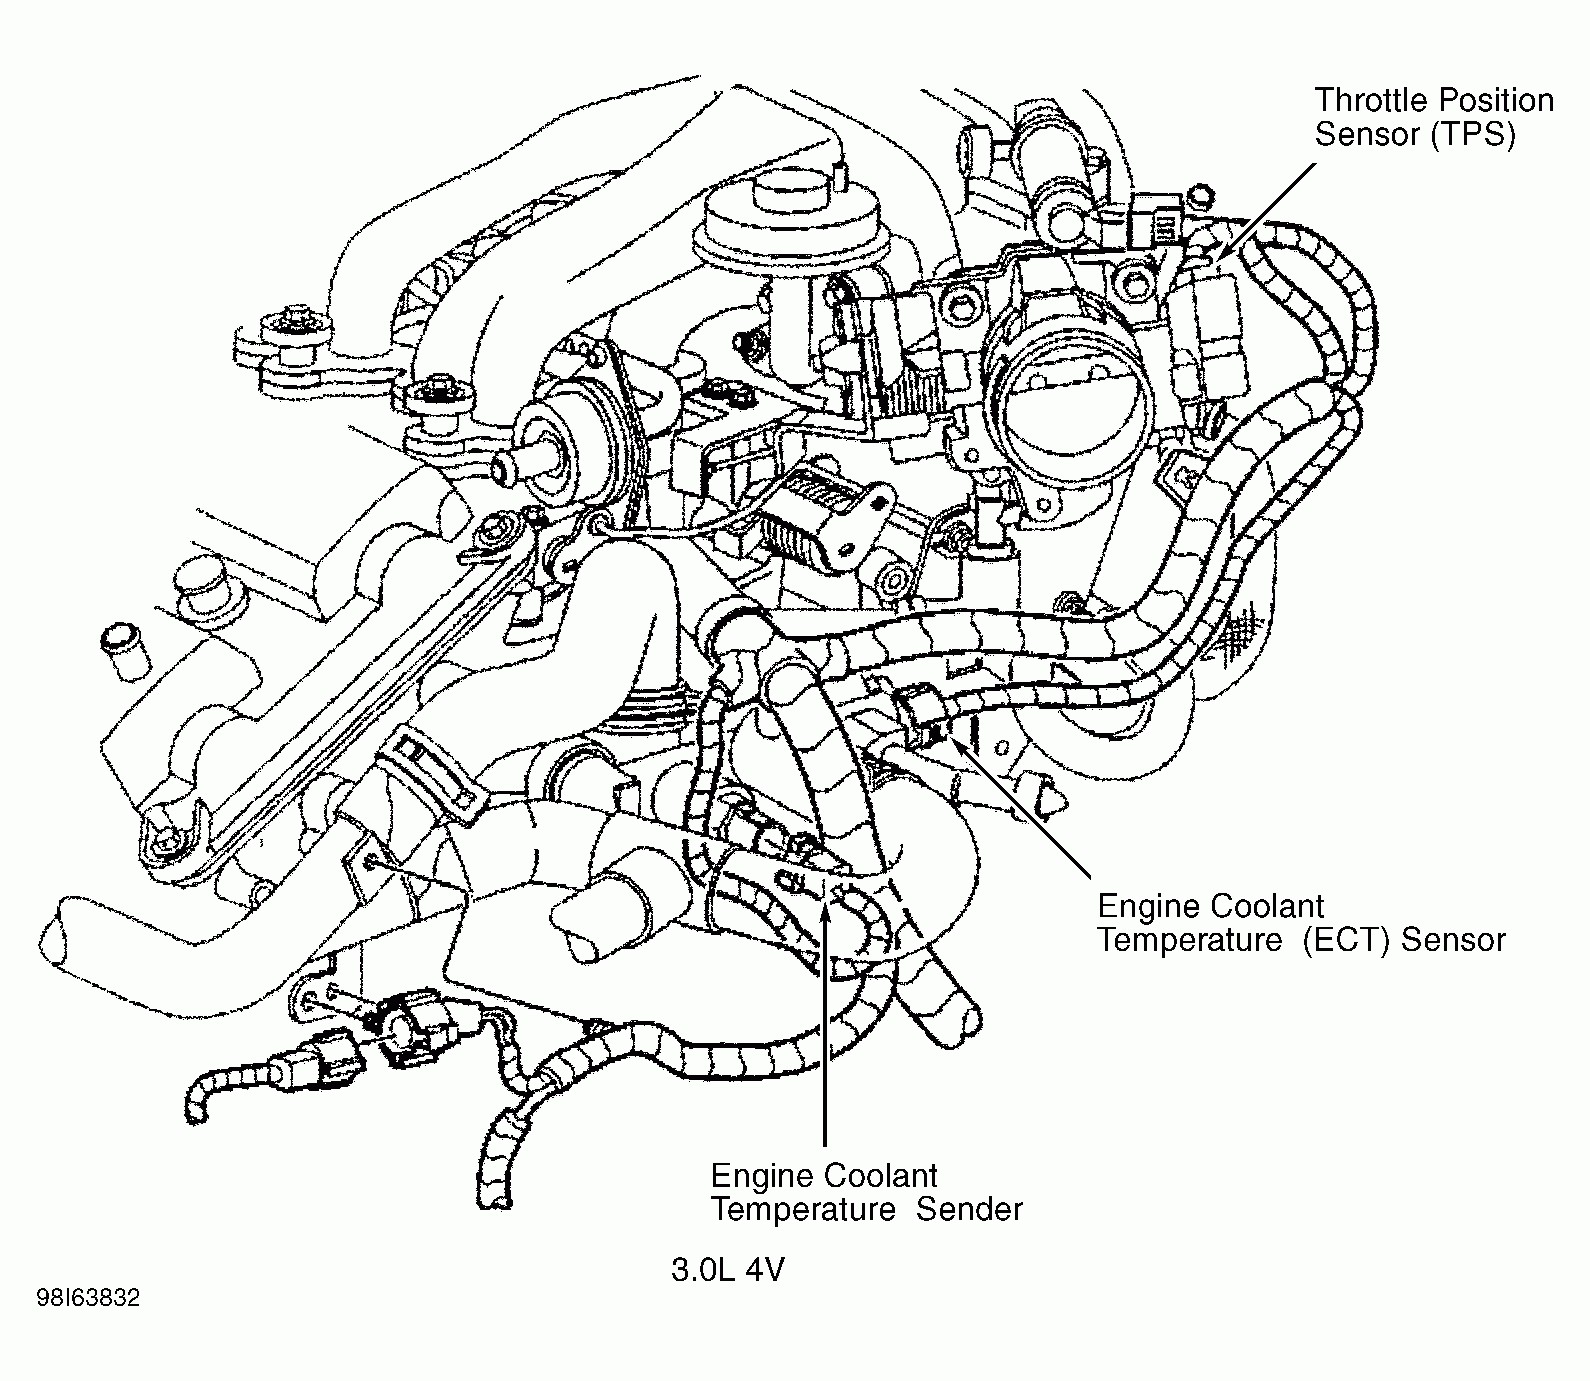 1999 Mercury Sable Engine Diagram 1999 Mercury Sable Ls Fuse Diagram Trusted Wiring Diagram Of 1999 Mercury Sable Engine Diagram